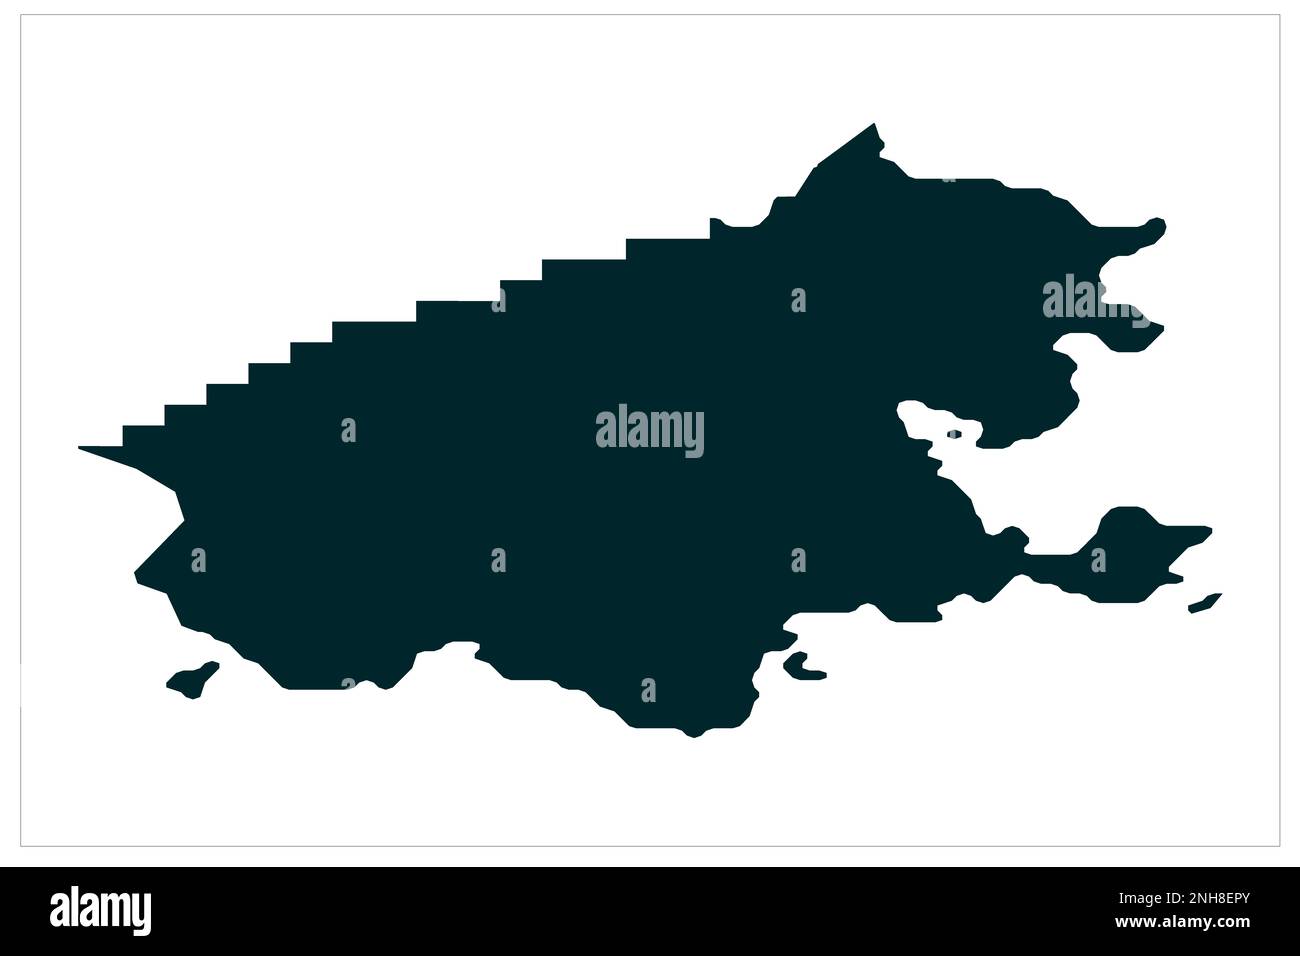 Sund Aland Island Karte auf weißem Hintergrund, Sund Aland Island Illustration Karte Stockfoto